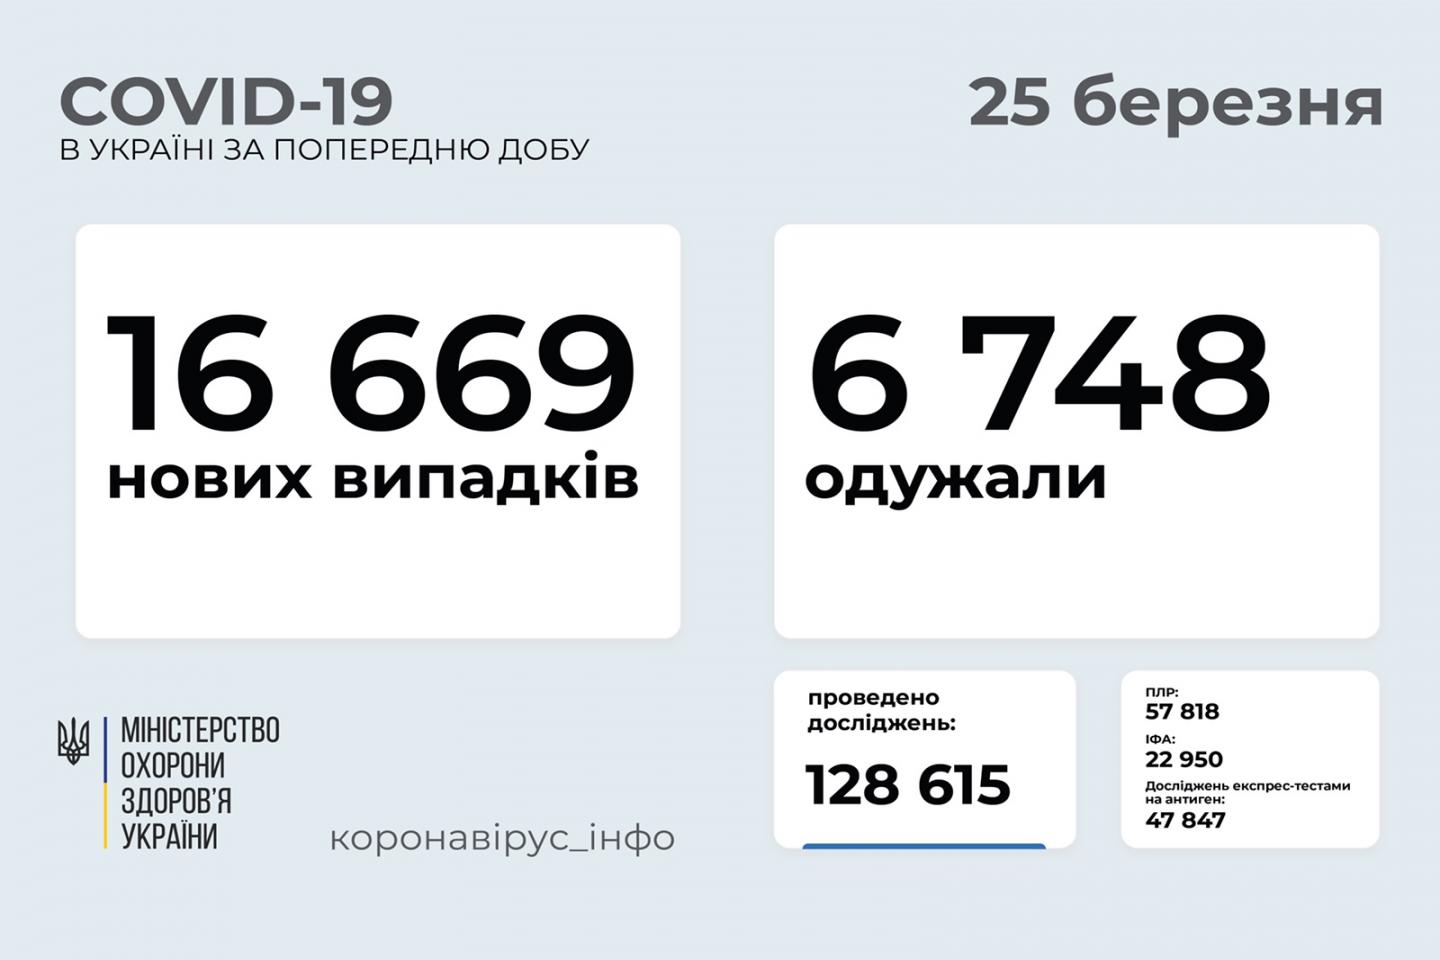 http://dunrada.gov.ua/uploadfile/archive_news/2021/03/25/2021-03-25_6246/images/images-41111.jpg